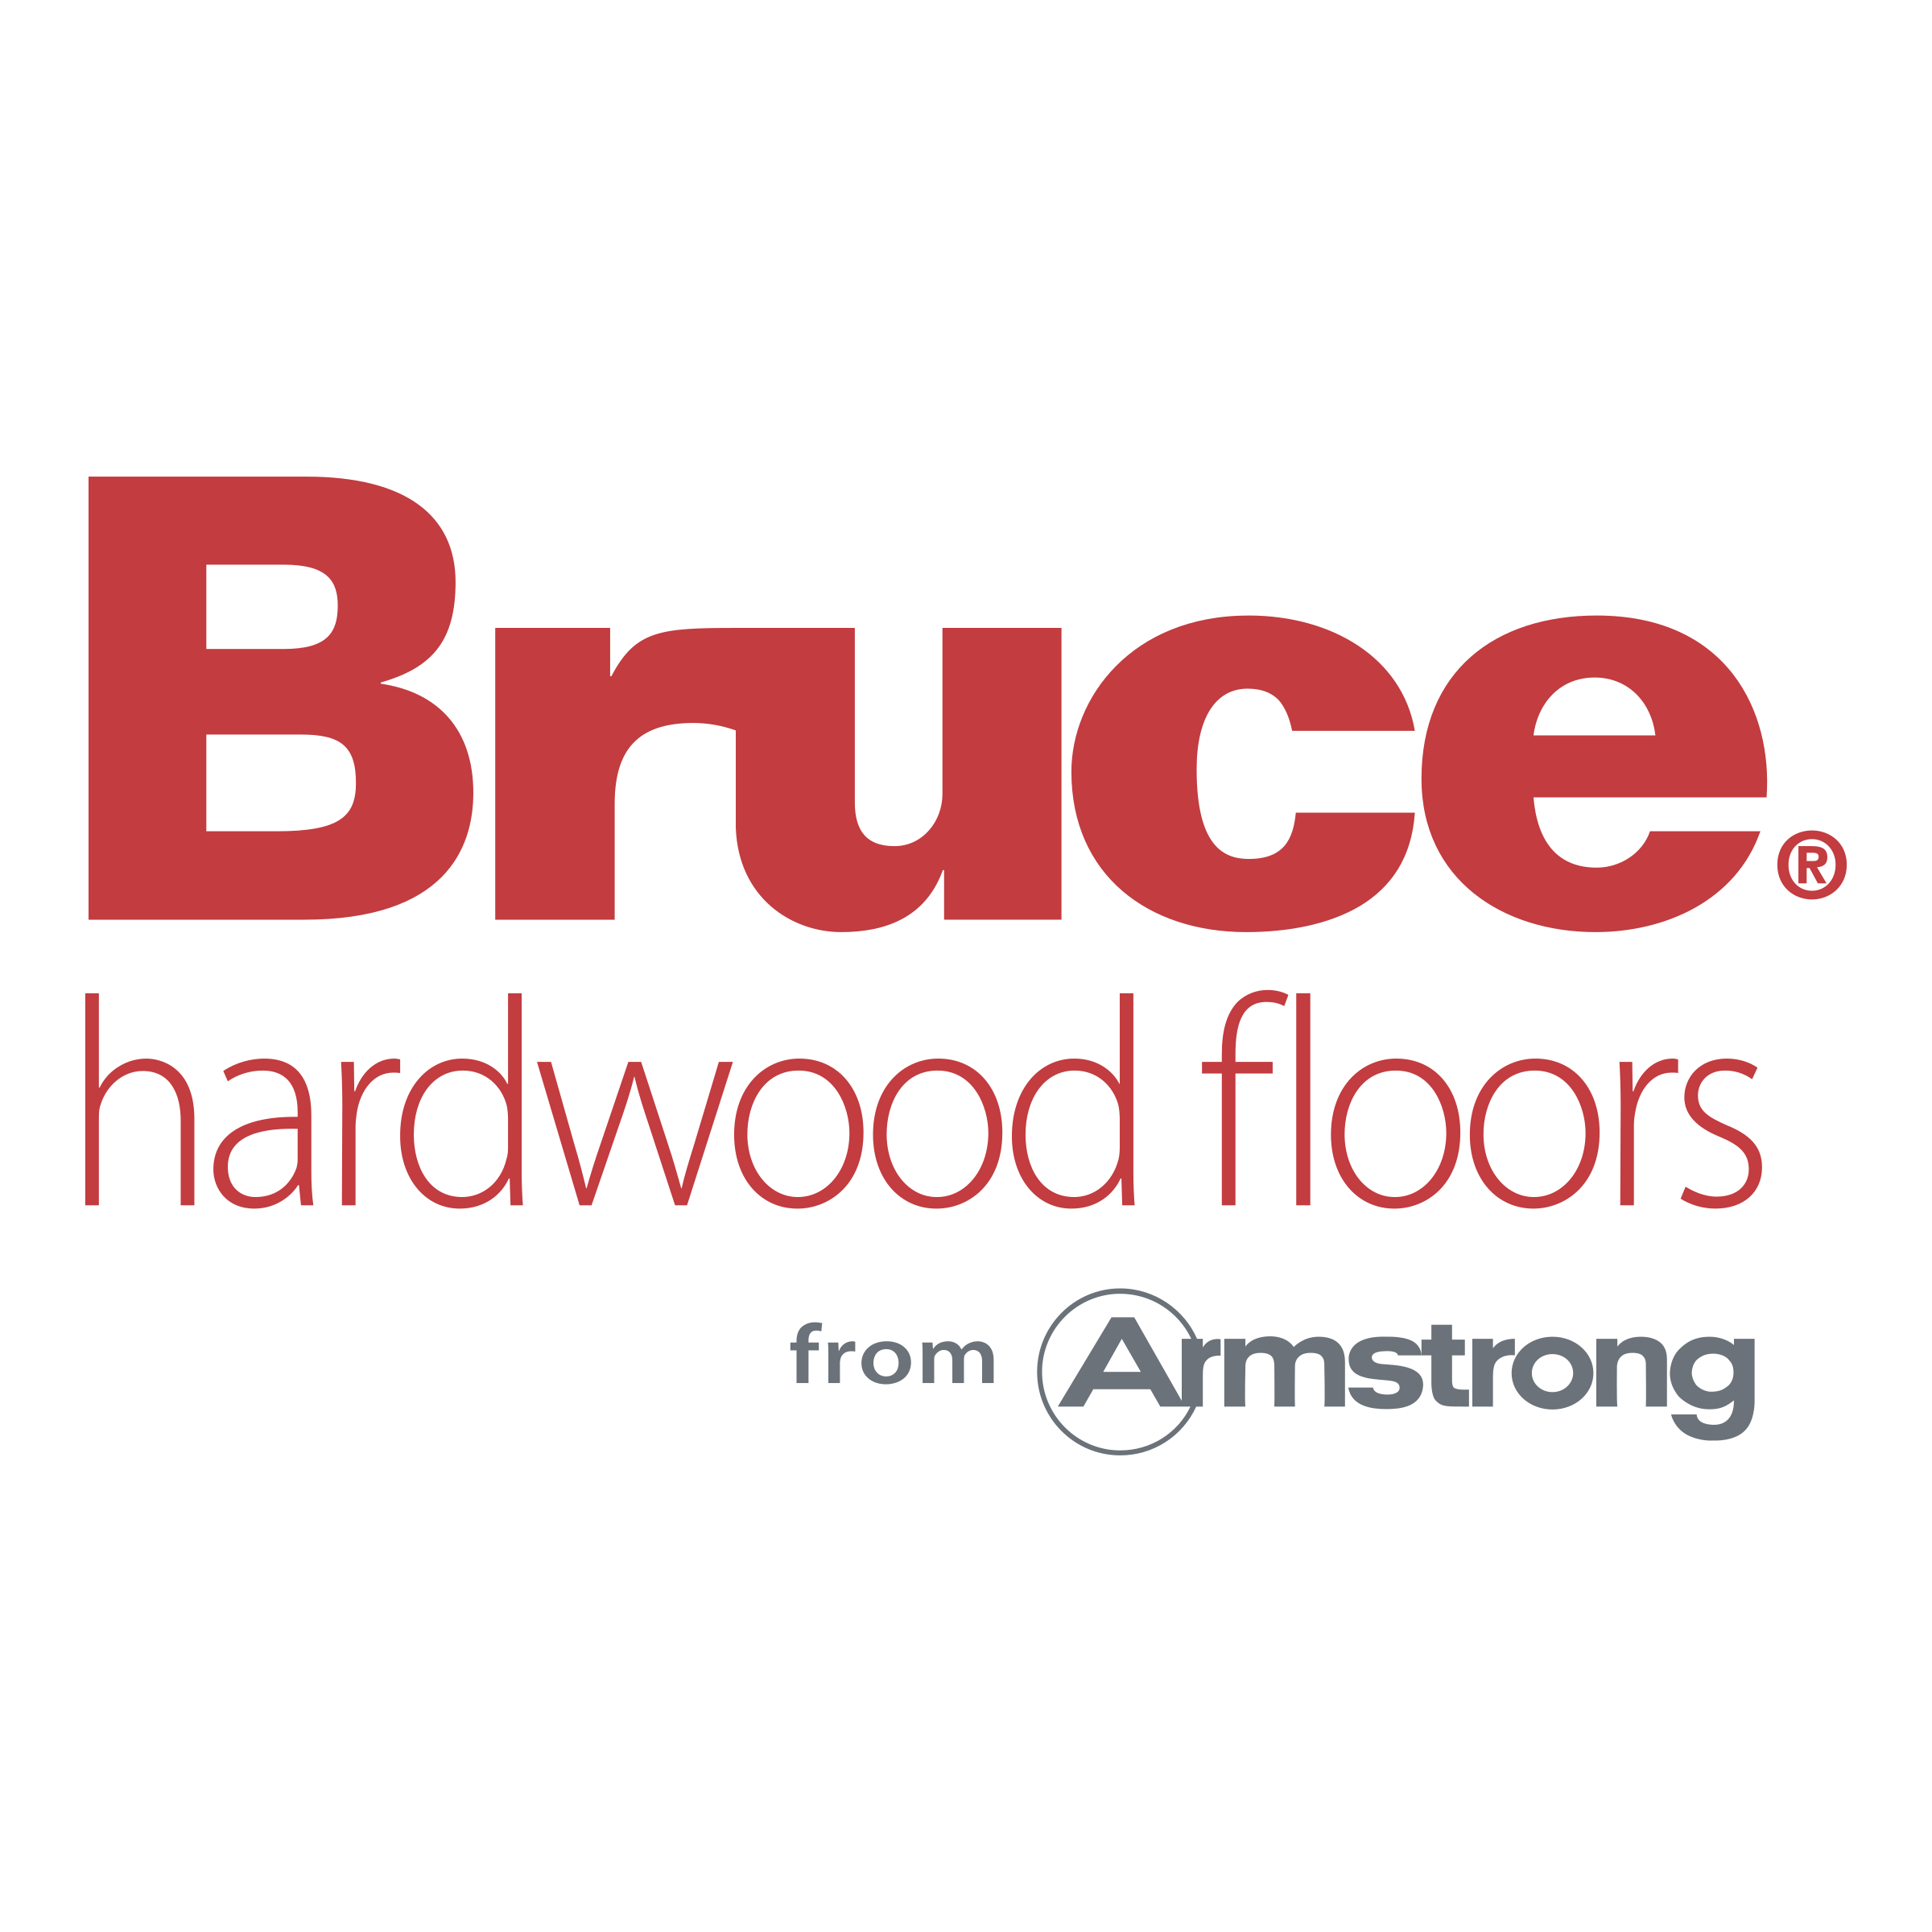 Bruce Logo - Bruce Logo PNG Transparent & SVG Vector - Freebie Supply